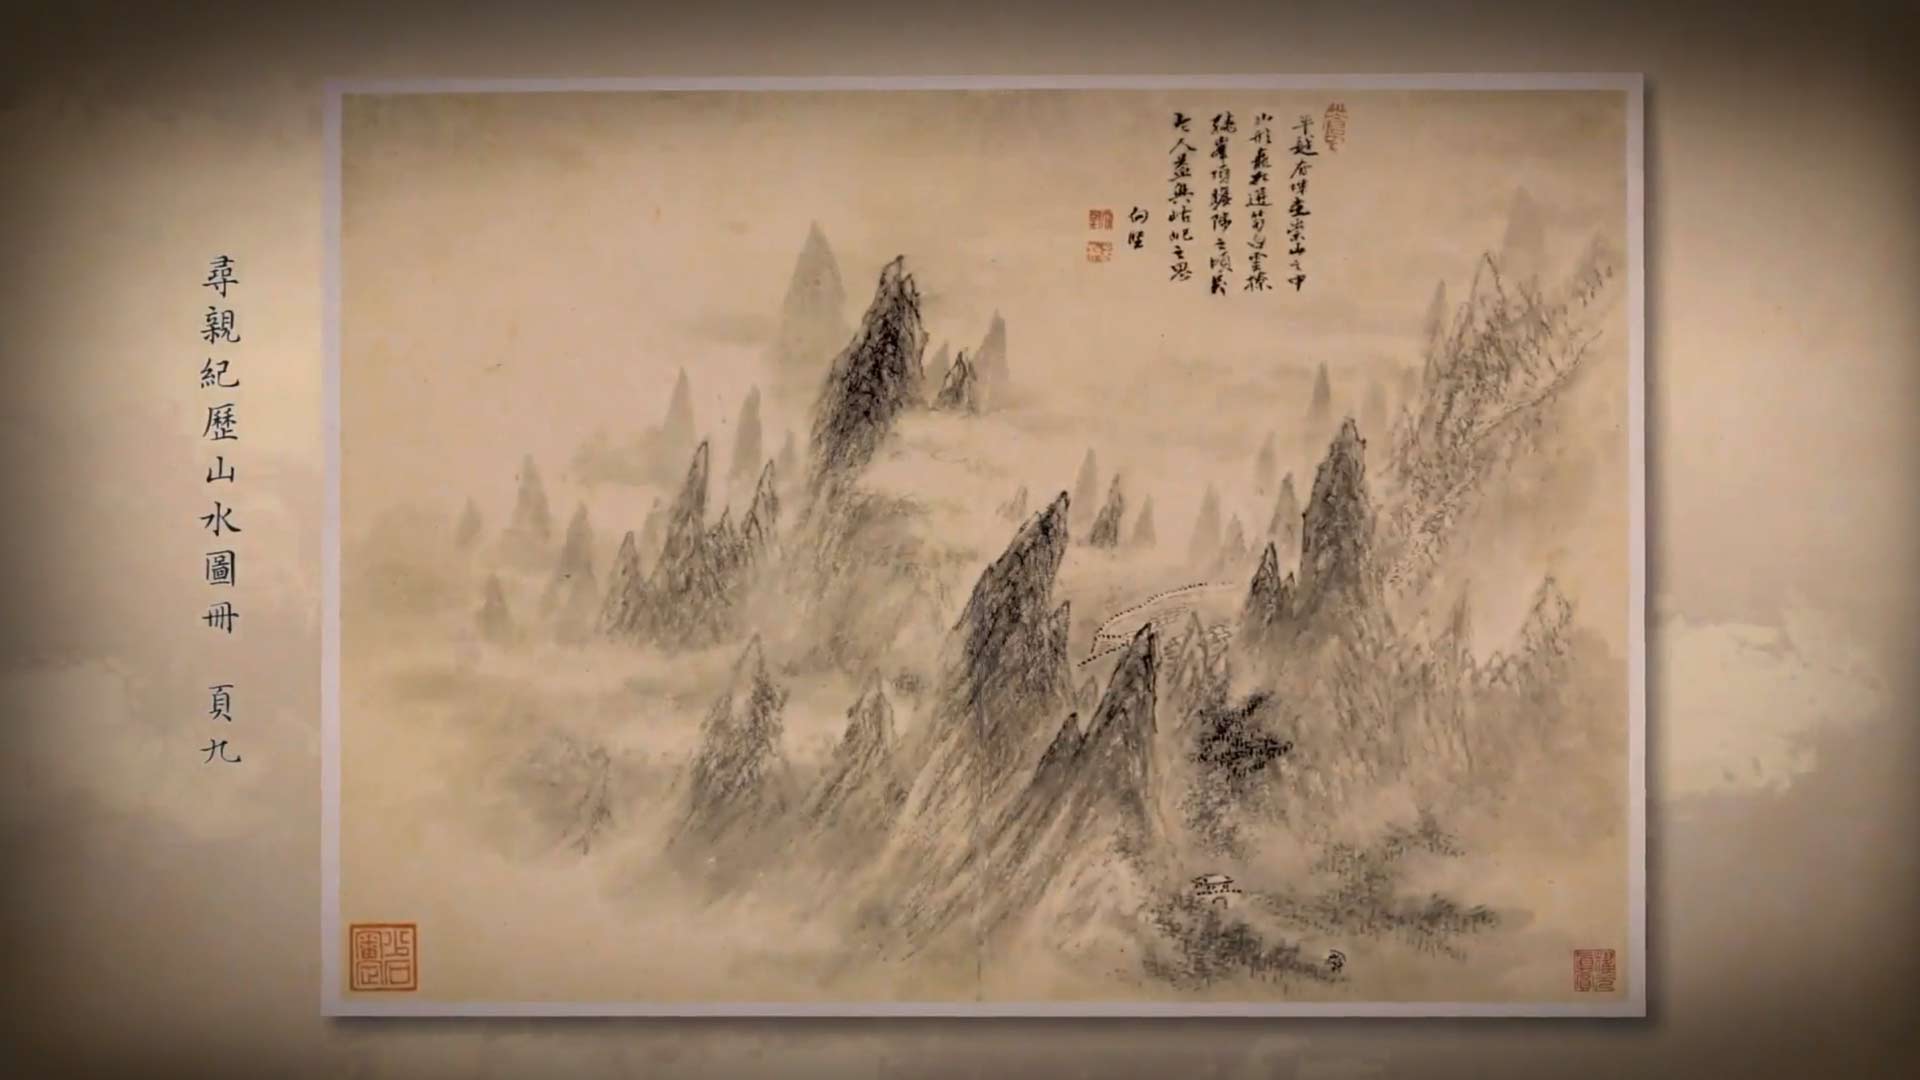 出处:《呼吸美学－中国古画赏析》: 万水千山总是情 (2021年)